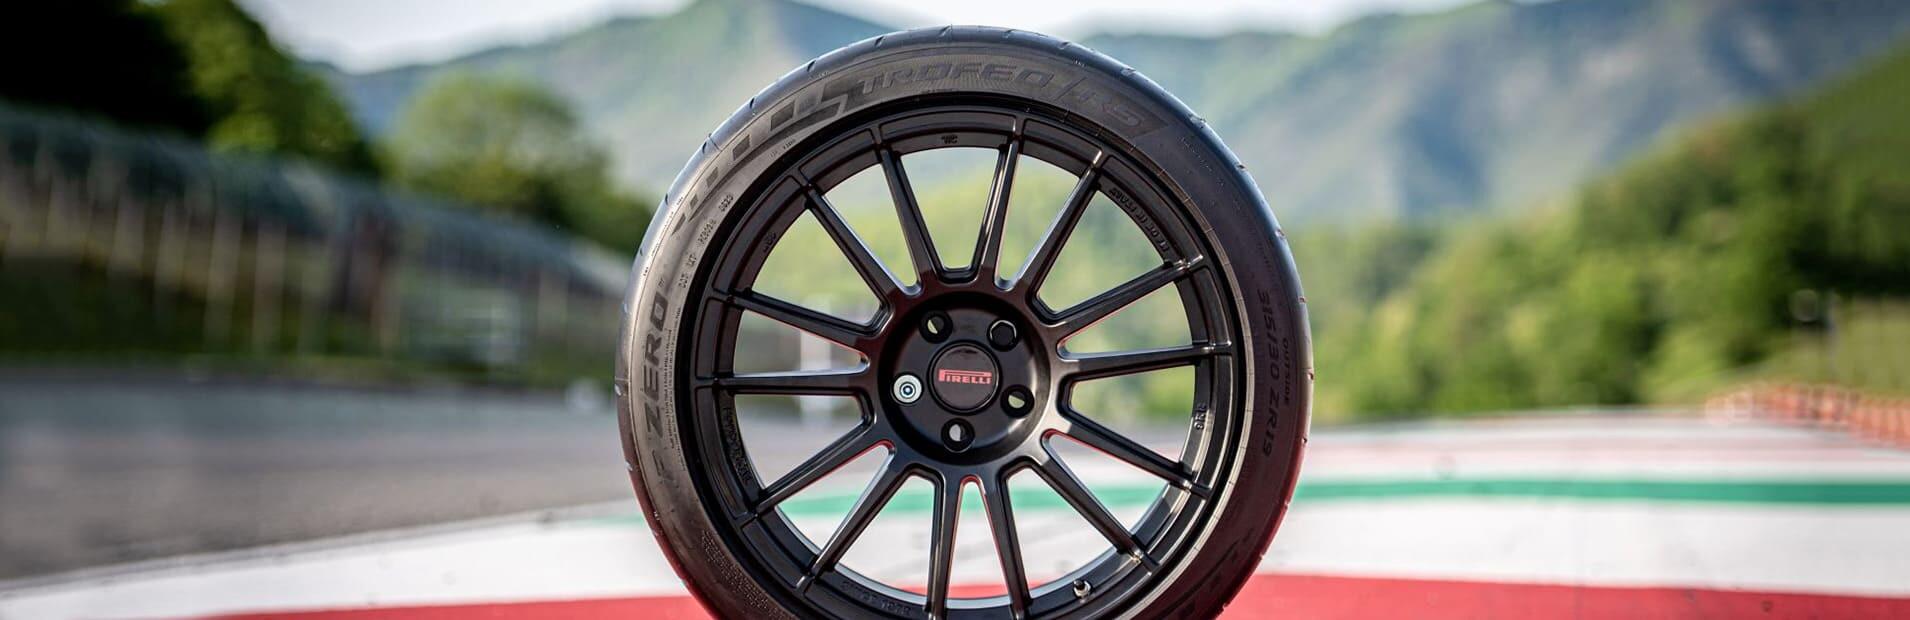 Pirelli P Zero Trofeo RS, il nuovo semi slick nato in pista